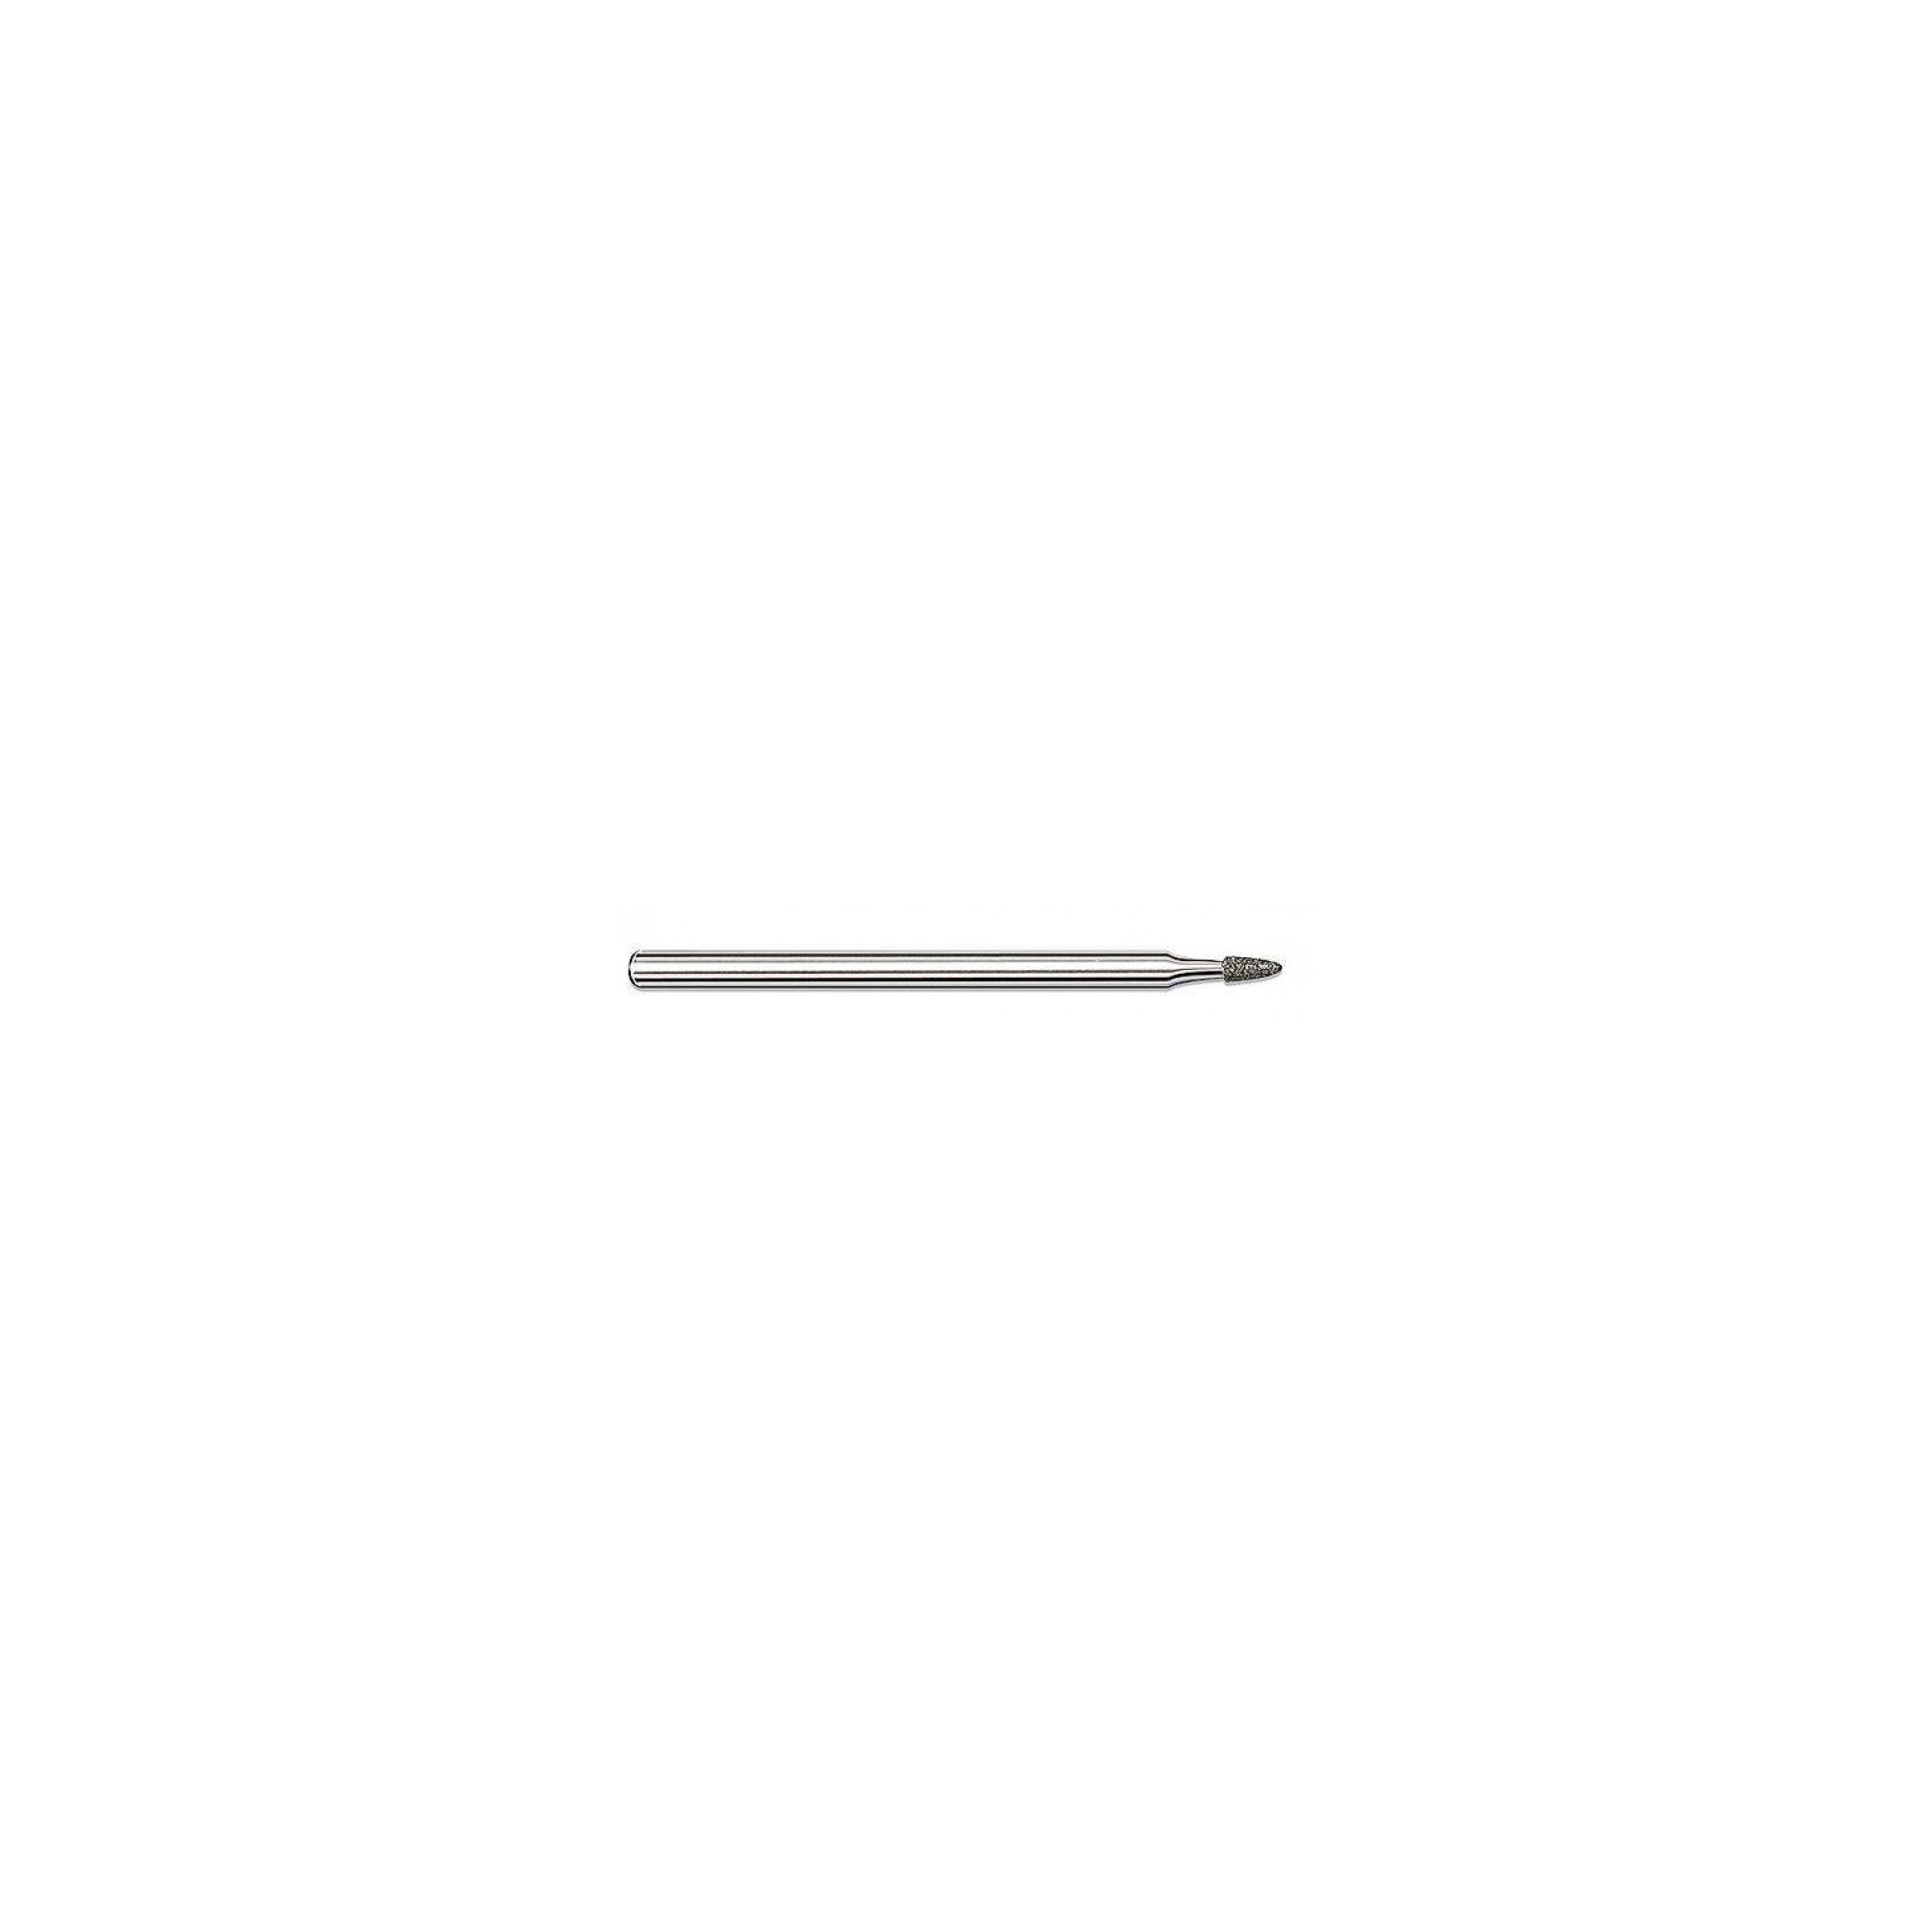 Fraise diamantée standard - Lissage des ongles et peaux - Grain moyen - Pack de 2 fraises - ø1,8mm